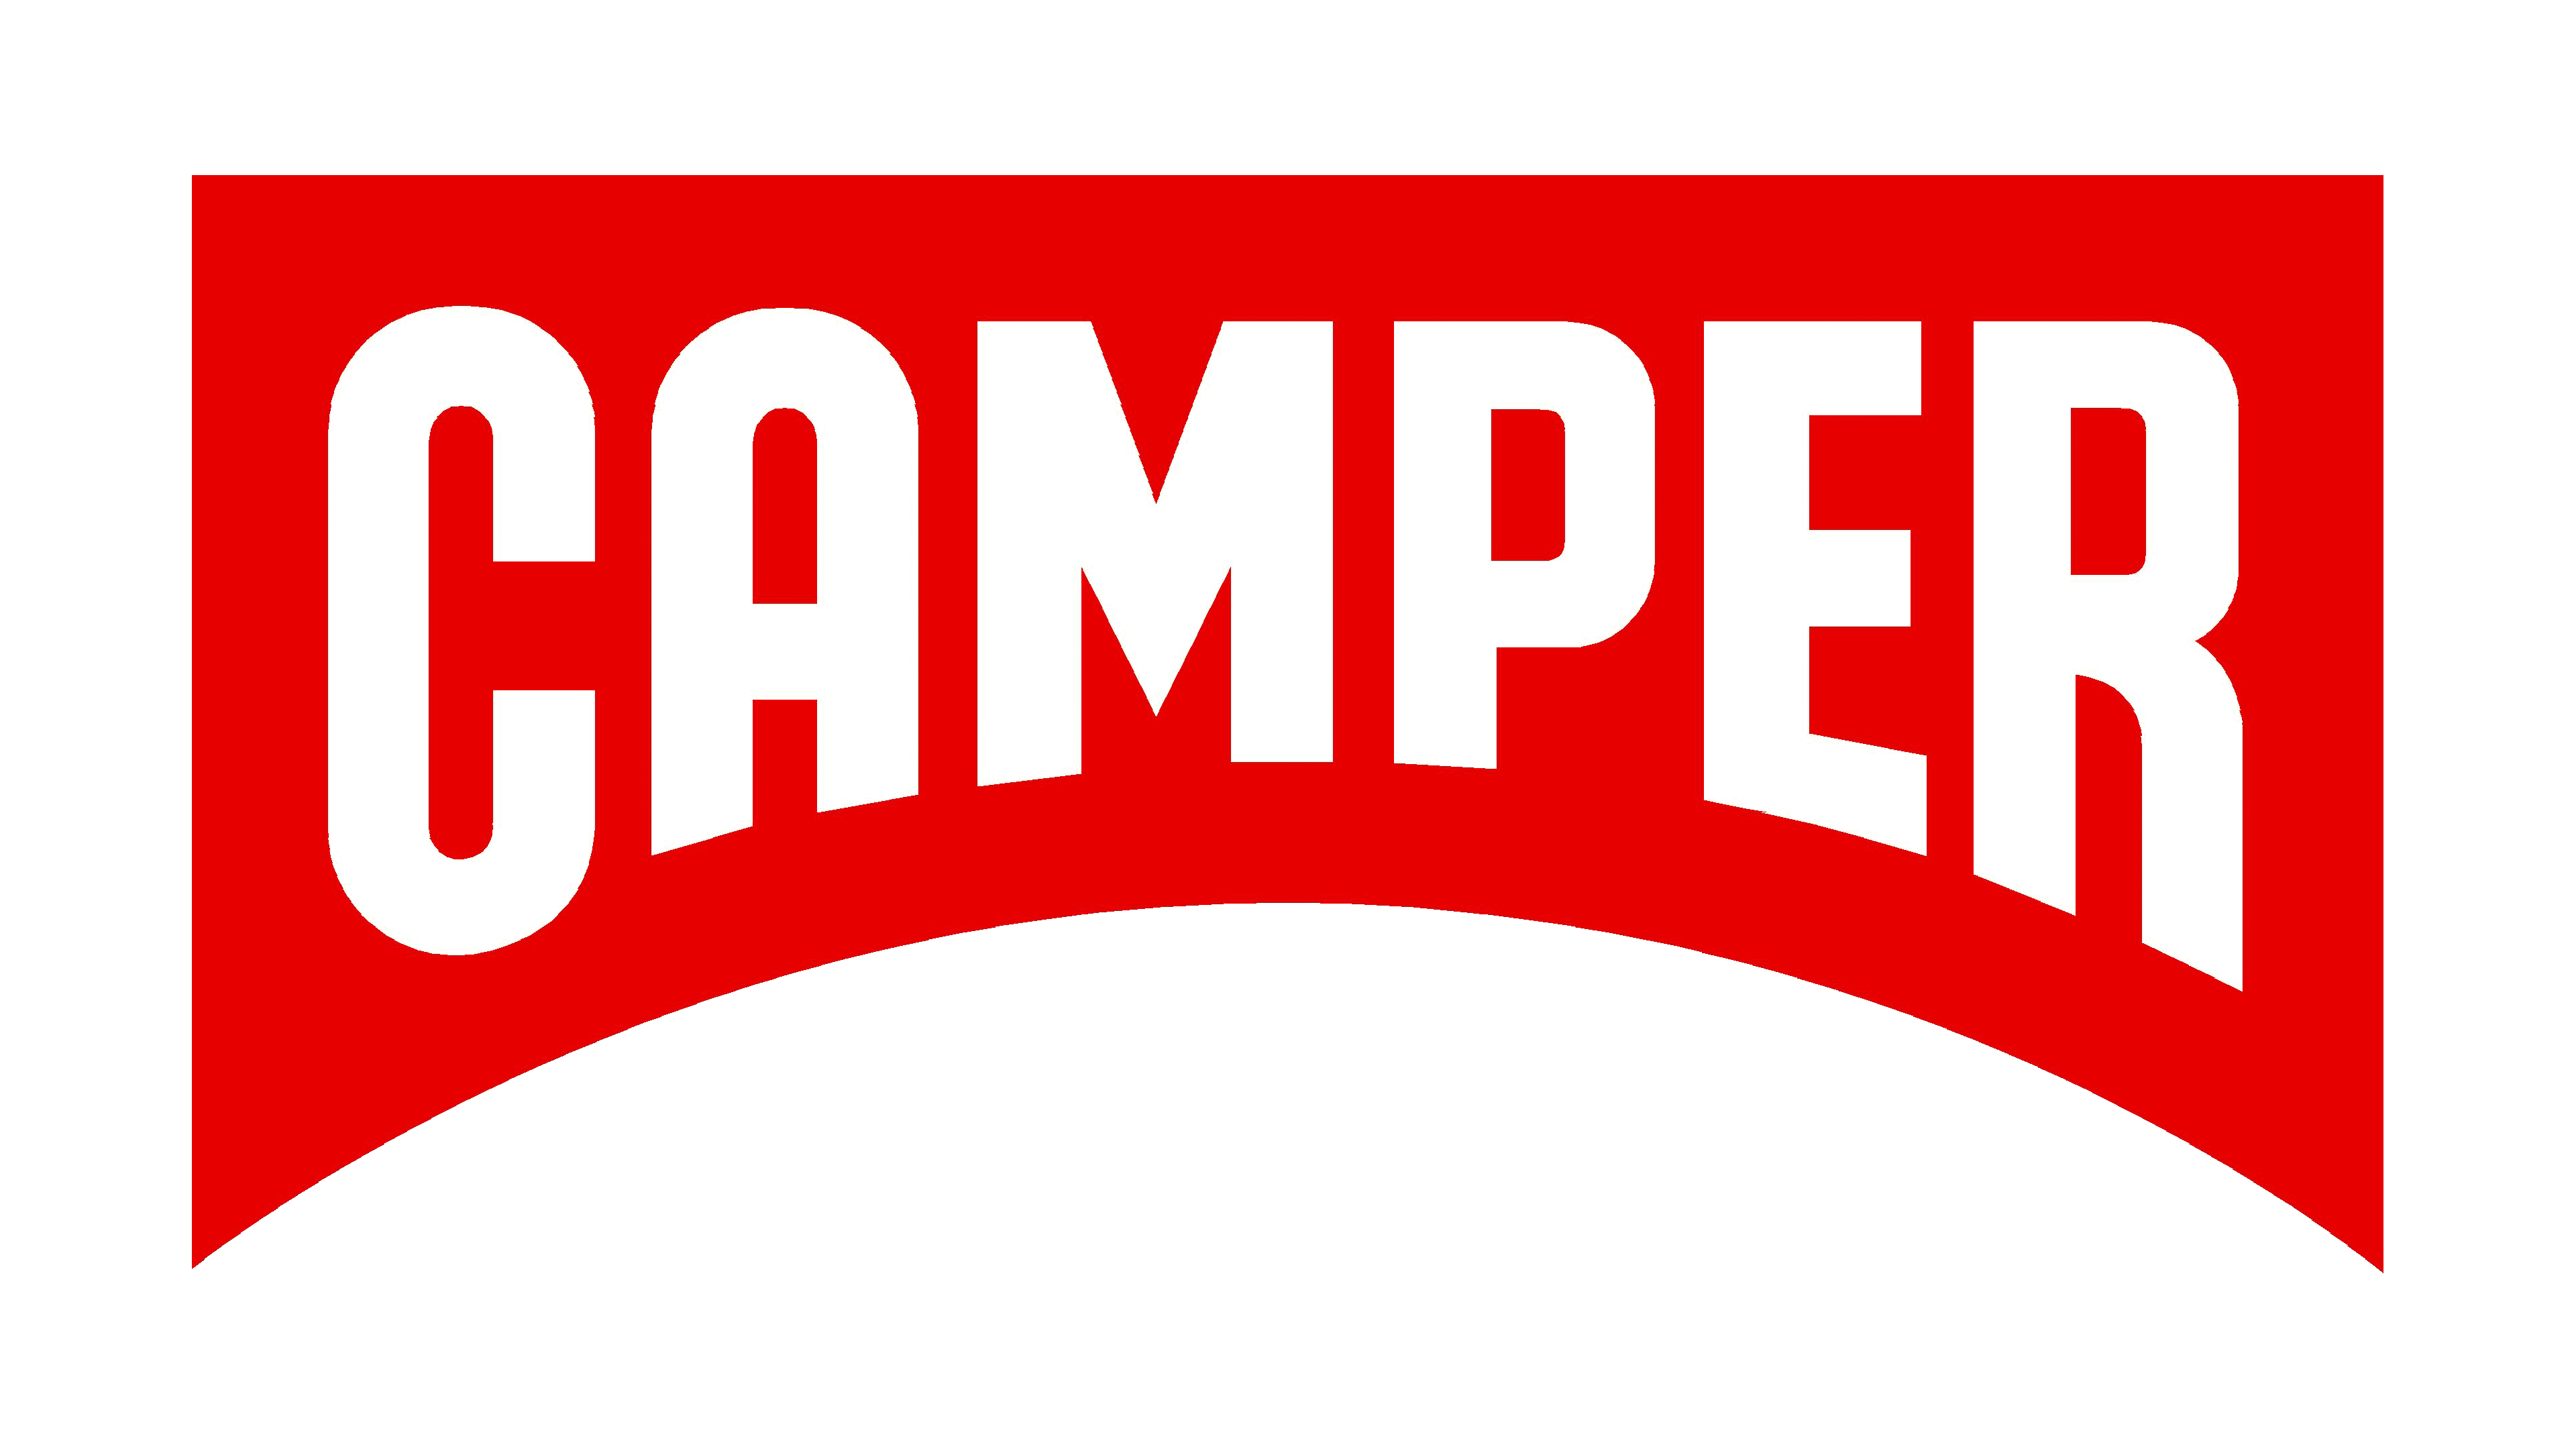 Update more than 153 camper logo super hot - tnbvietnam.edu.vn